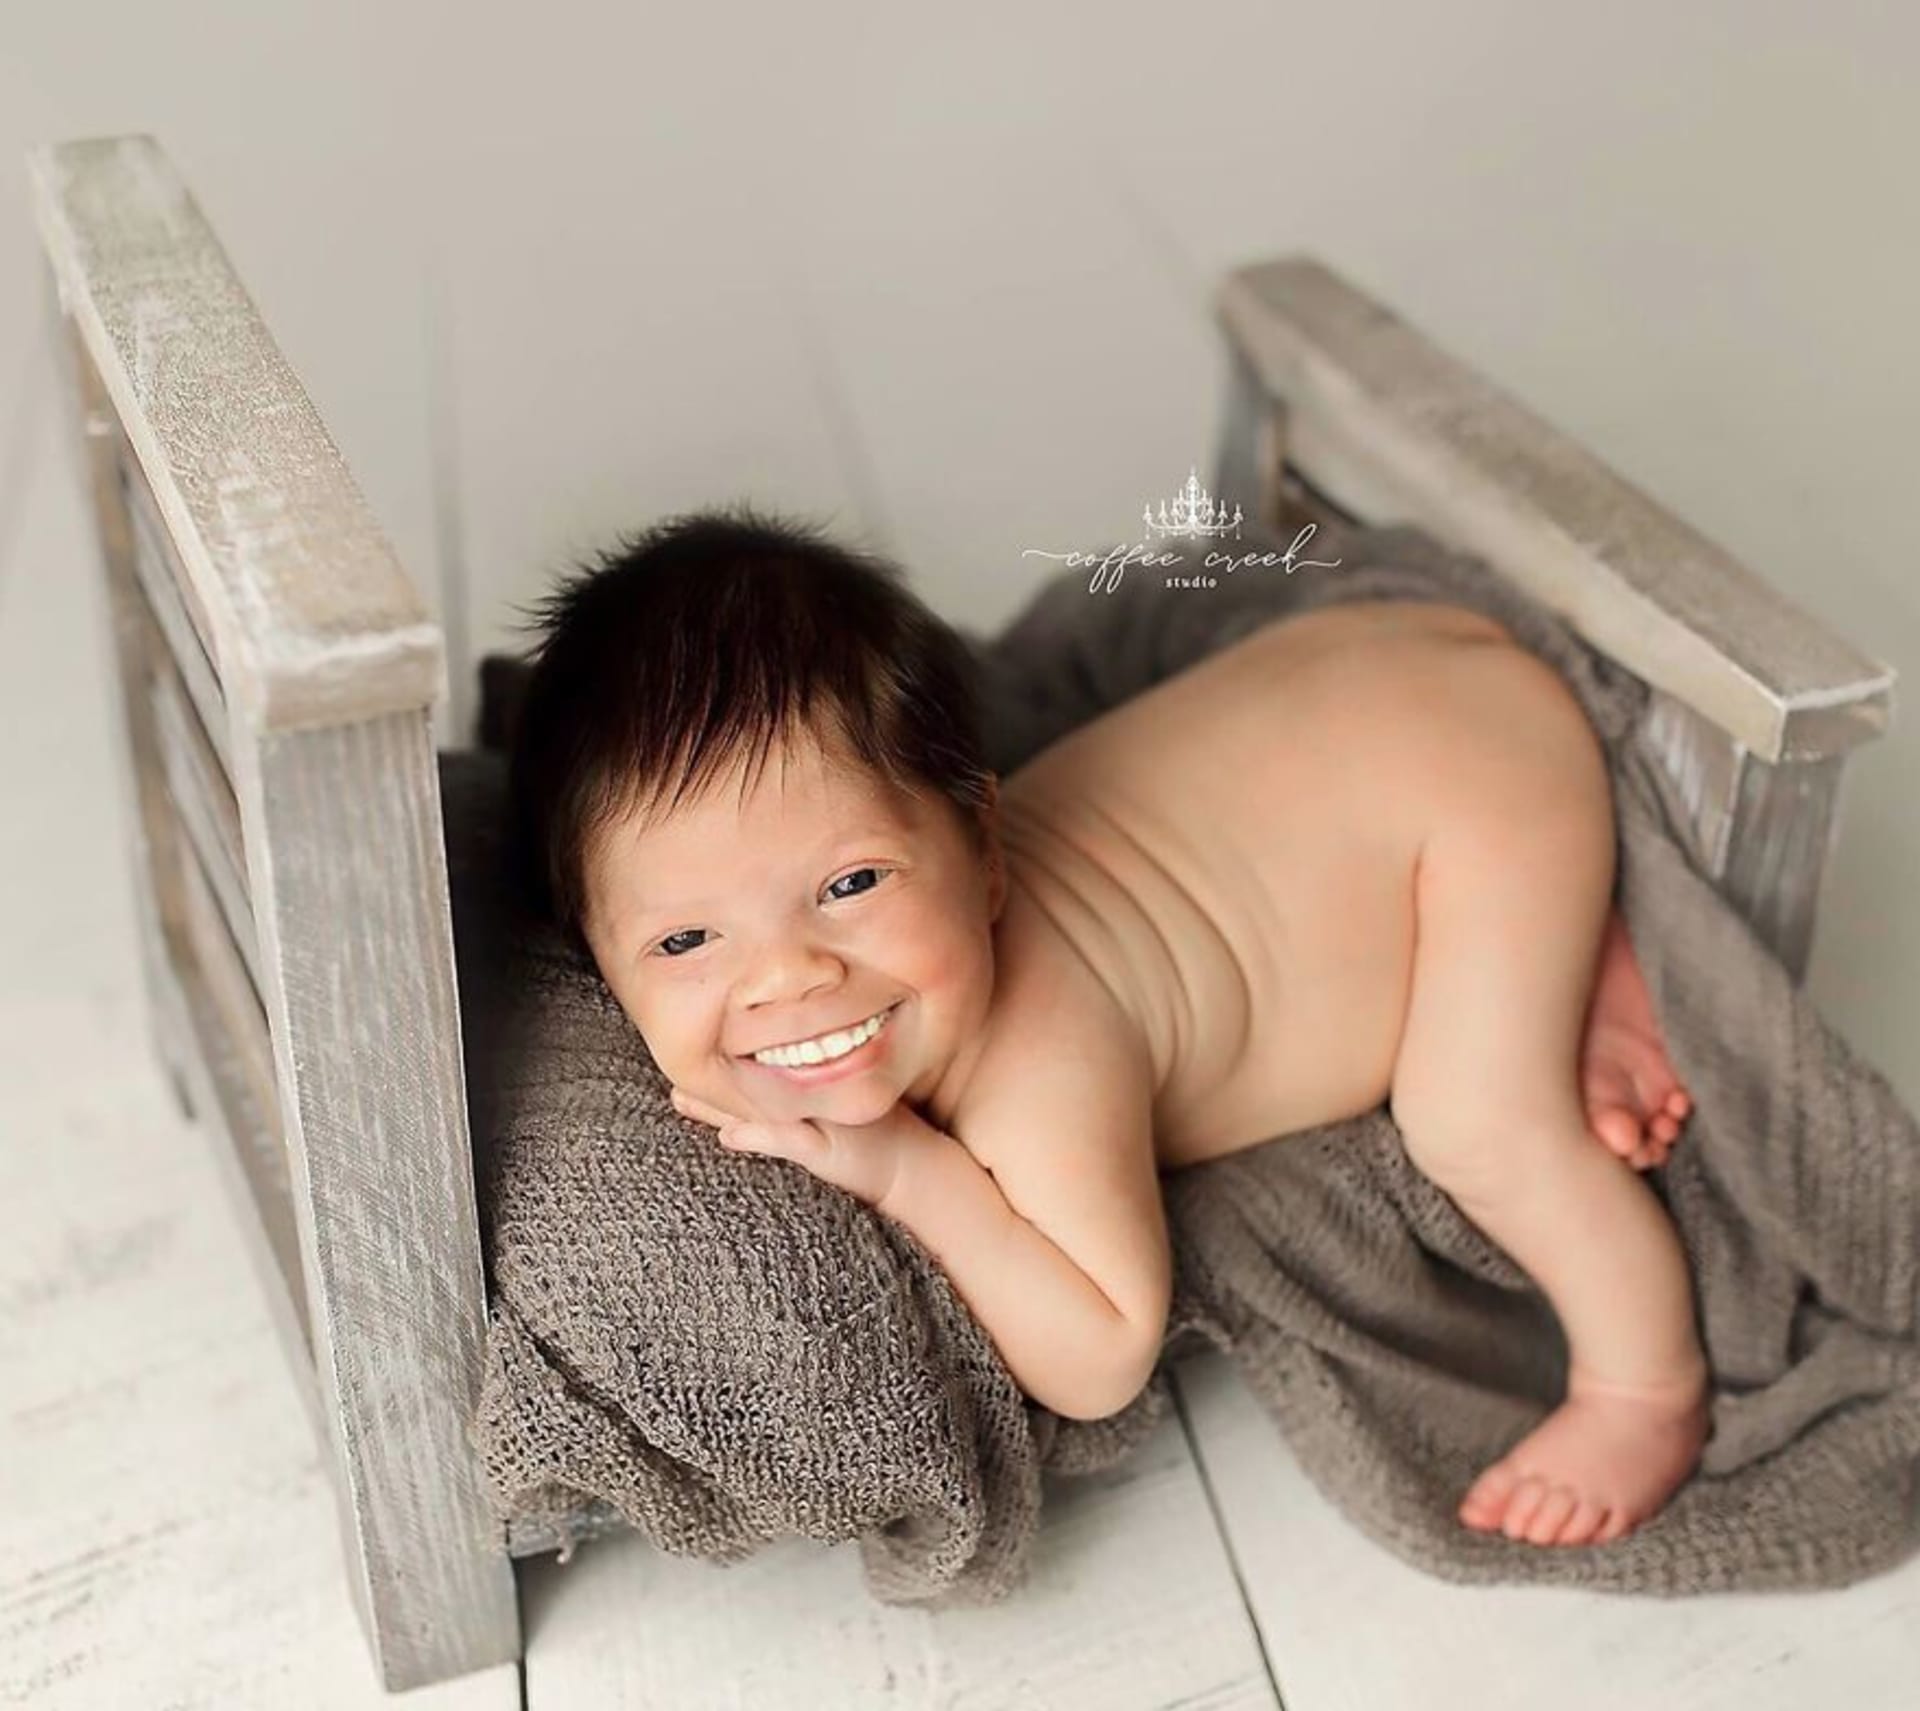 Fotky novorozenců se zuby děsí celý internet 9